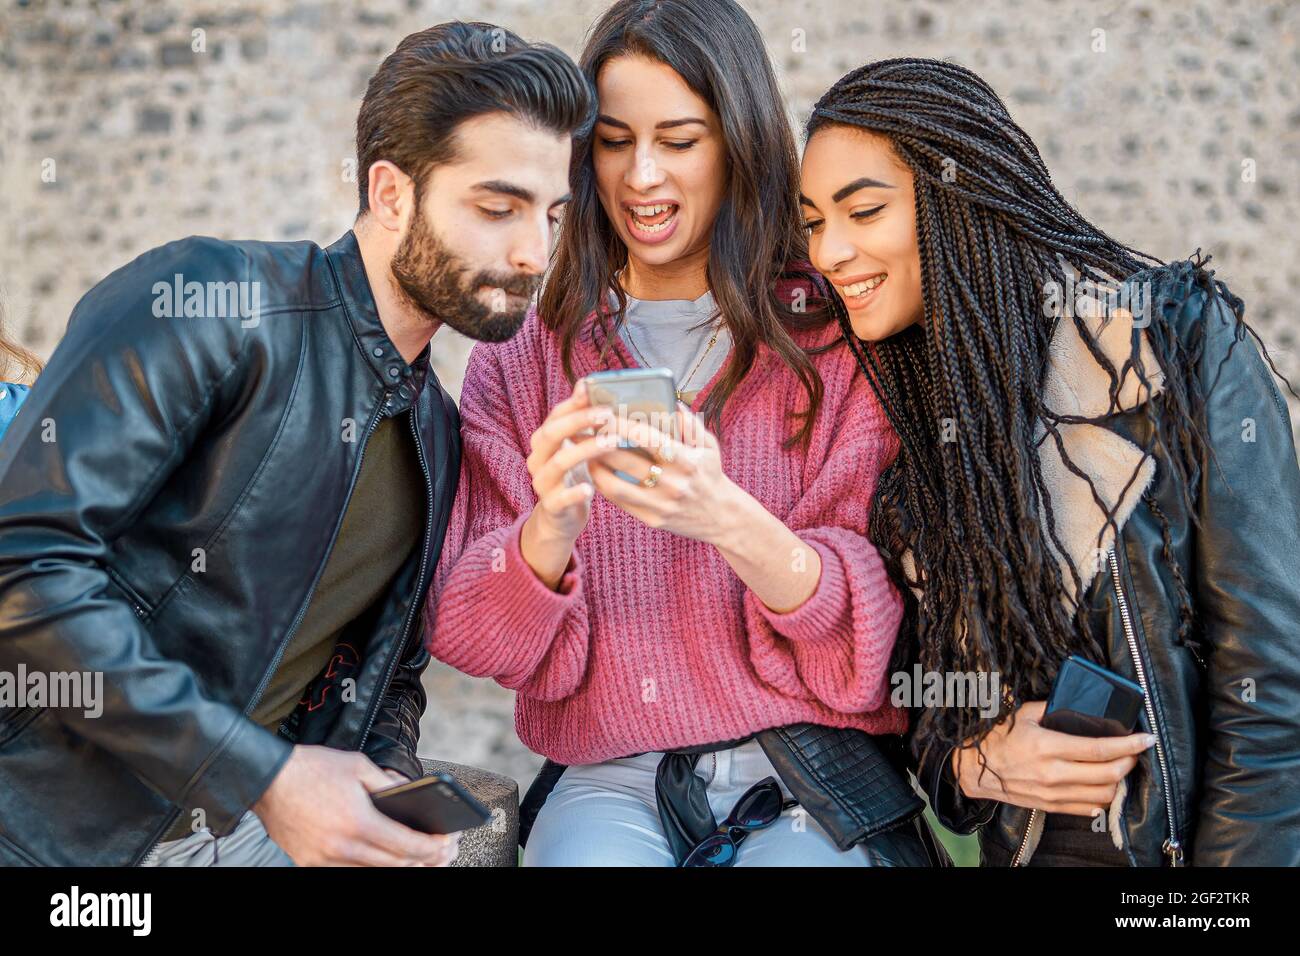 Generación z jóvenes navegando contenido de redes sociales en línea con un smartphone. Zoomers que utilizan la tecnología del teléfono juntos al aire libre. Foto de stock